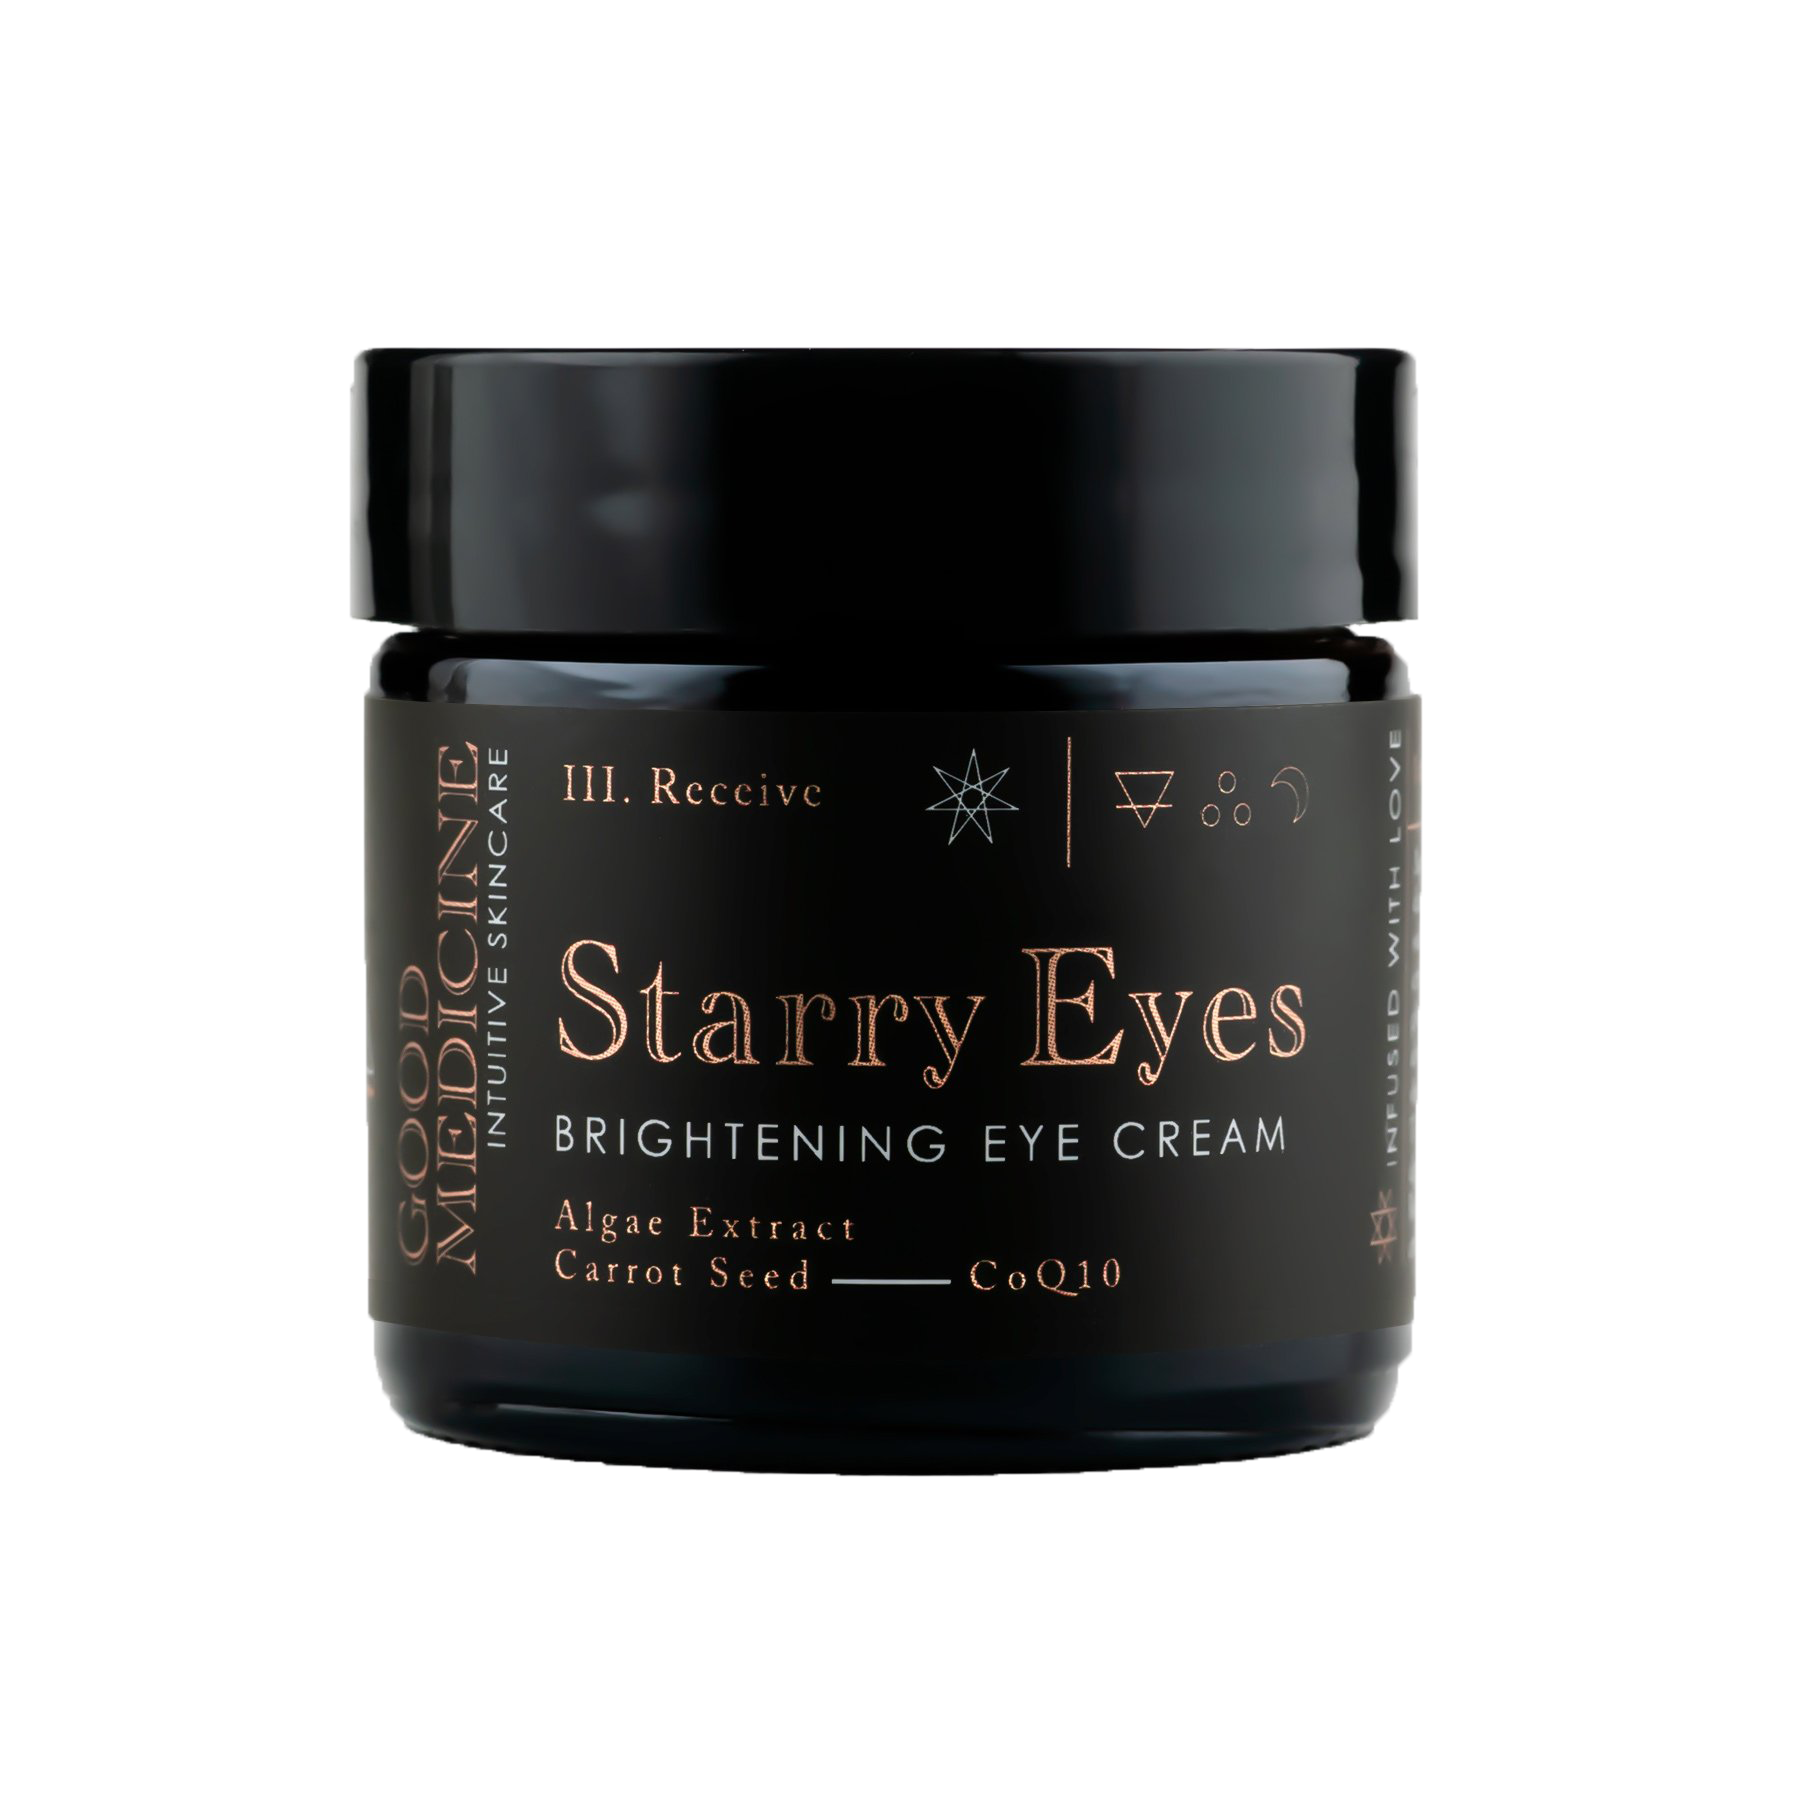 STARRY EYES Brightening Eye Cream